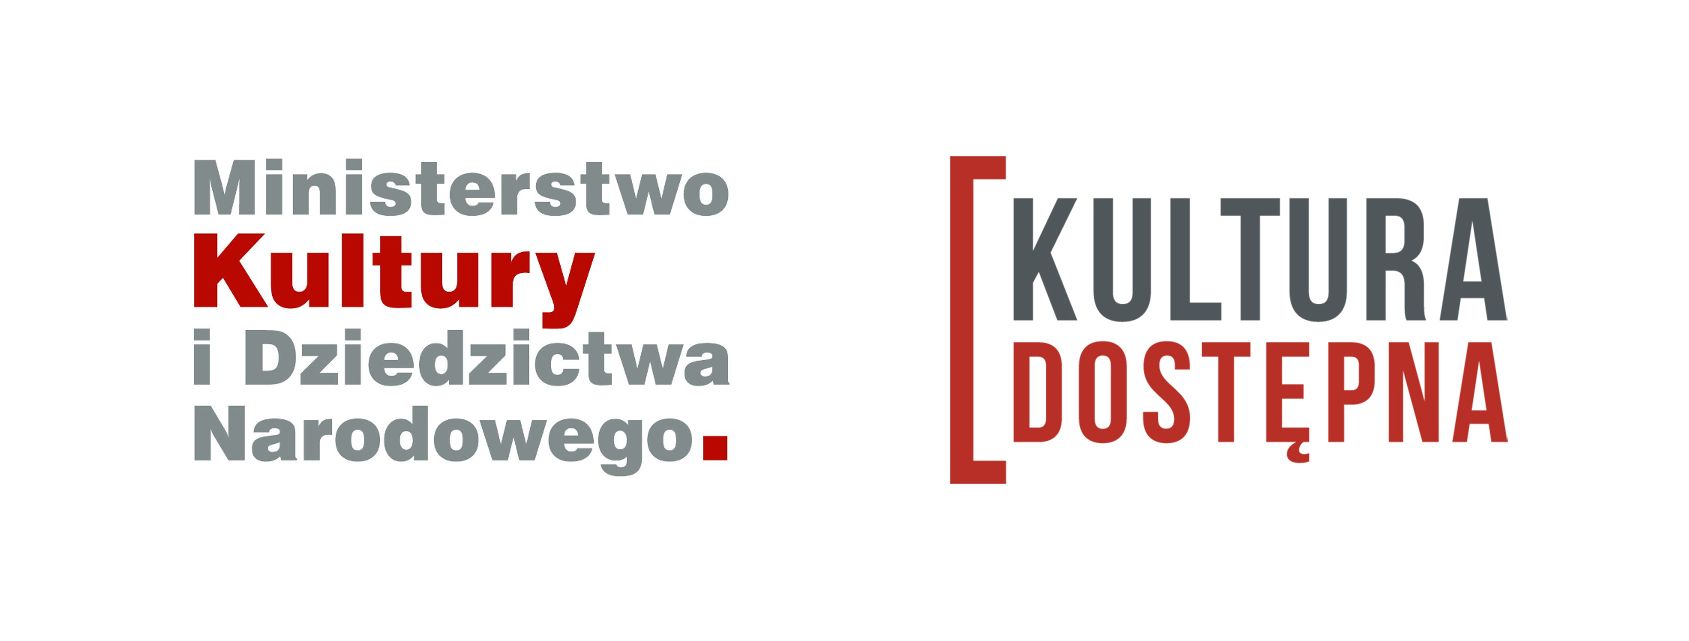 Grafika z dwoma logotypami. Logotyp Ministerstwa Kultury i Dziedzictwa Narodowego oraz logotyp Kultury Dostępnej. 